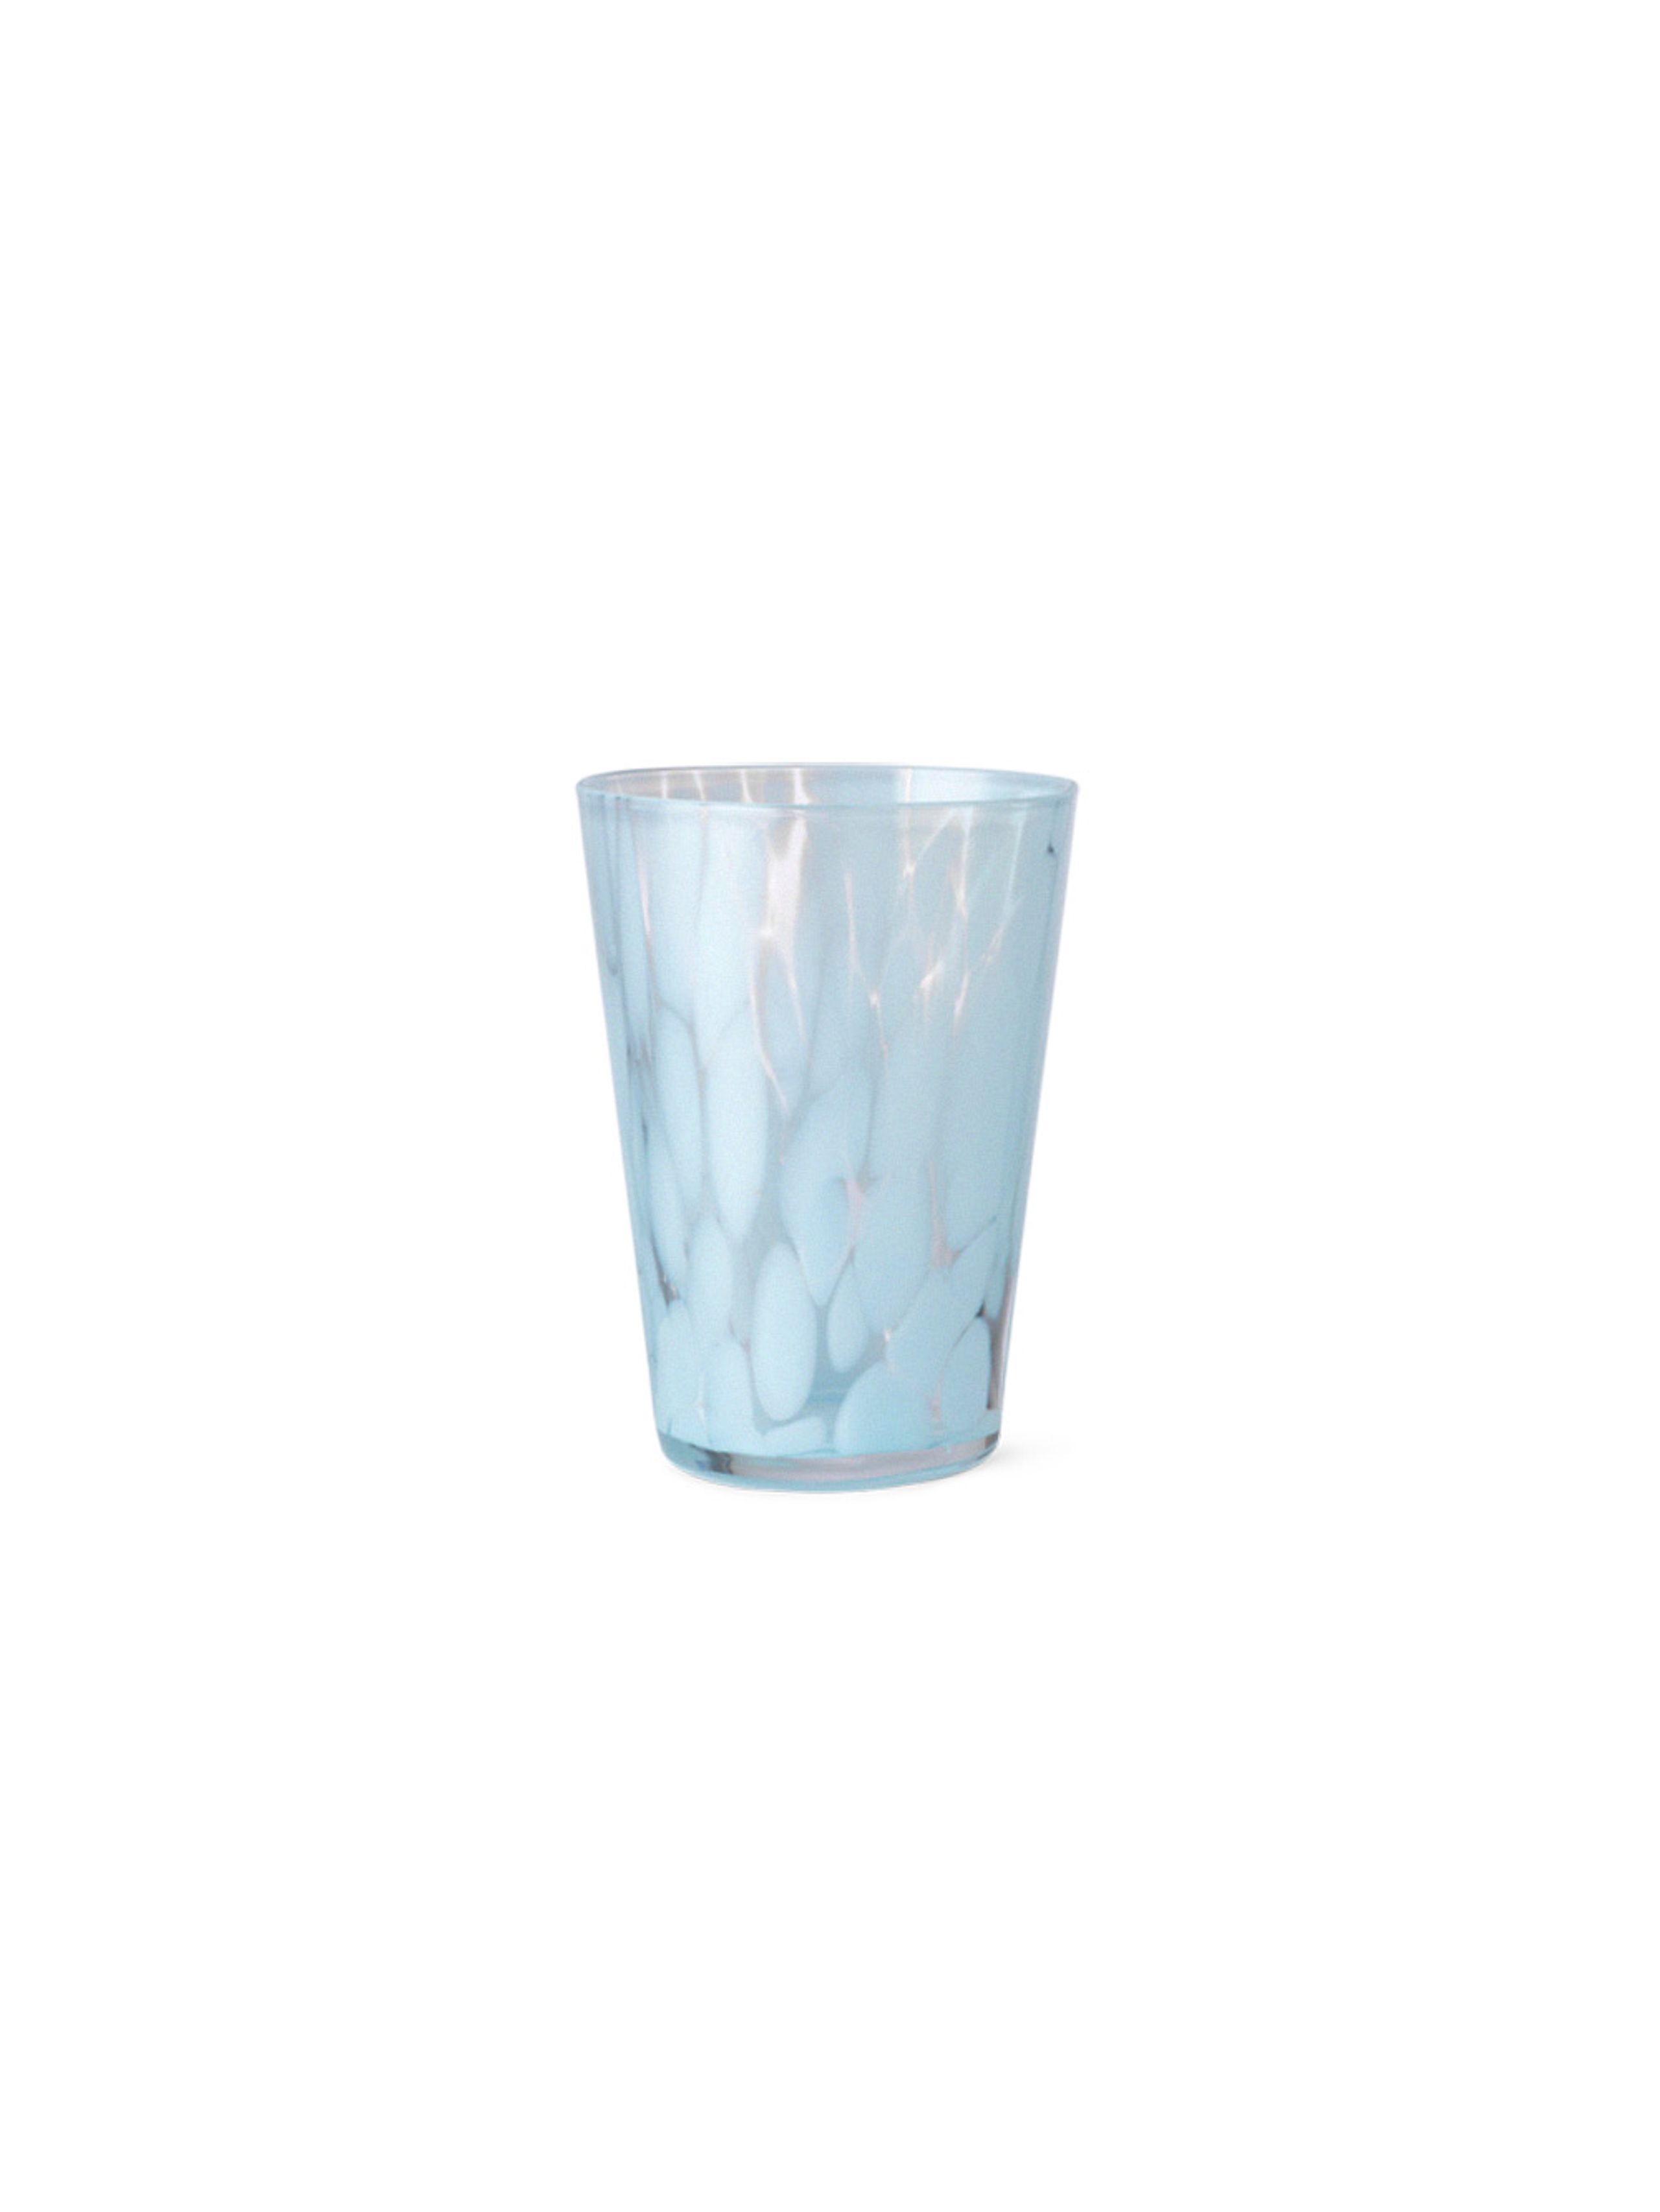 Ferm Living - Vaso - Casca Glass - Pale Blue